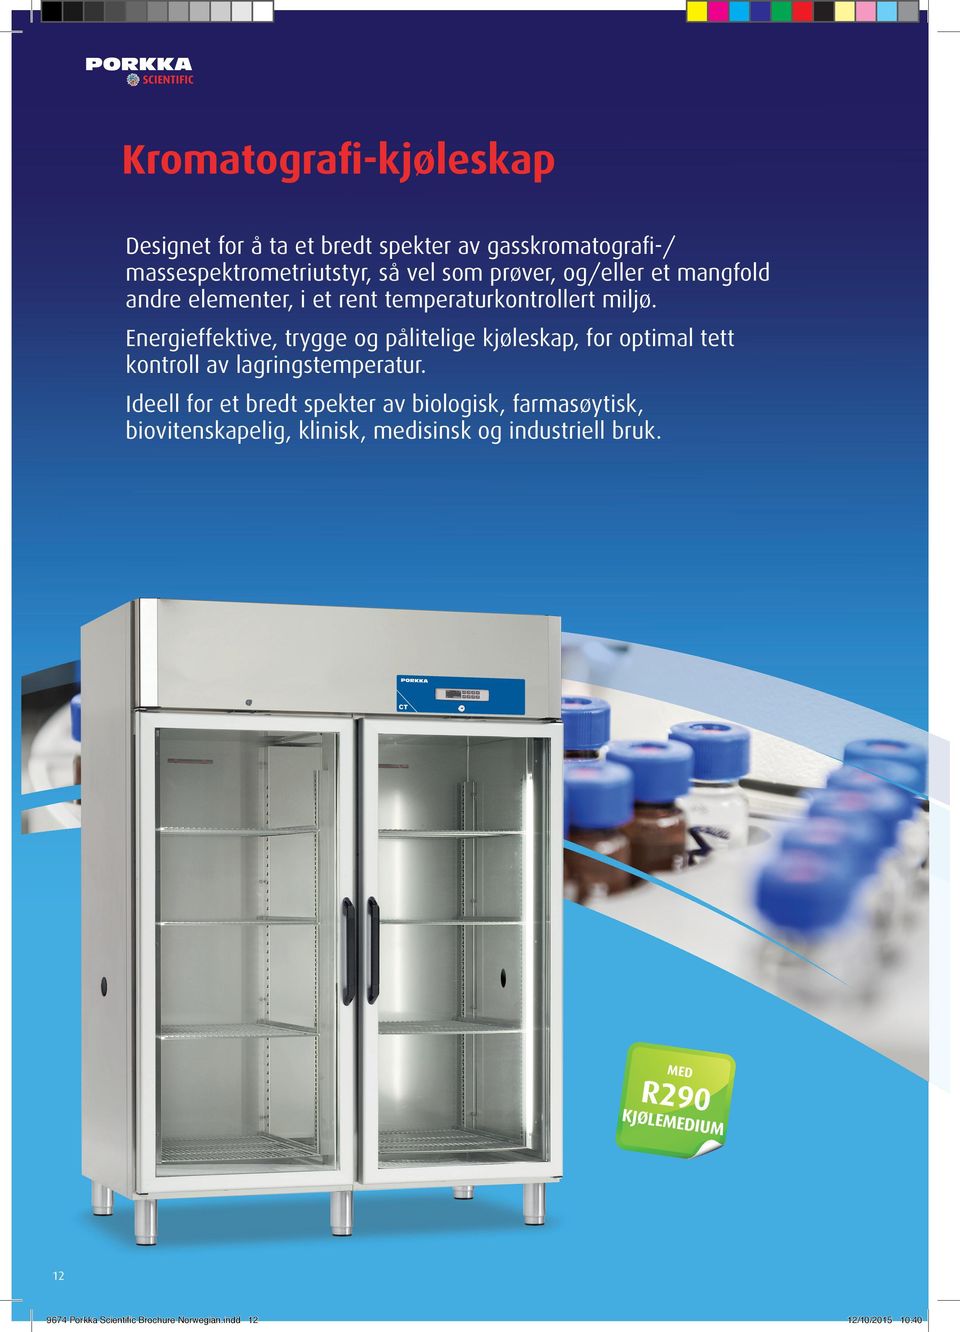 Energieffektive, trygge og pålitelige kjøleskap, for optimal tett kontroll av lagringstemperatur.